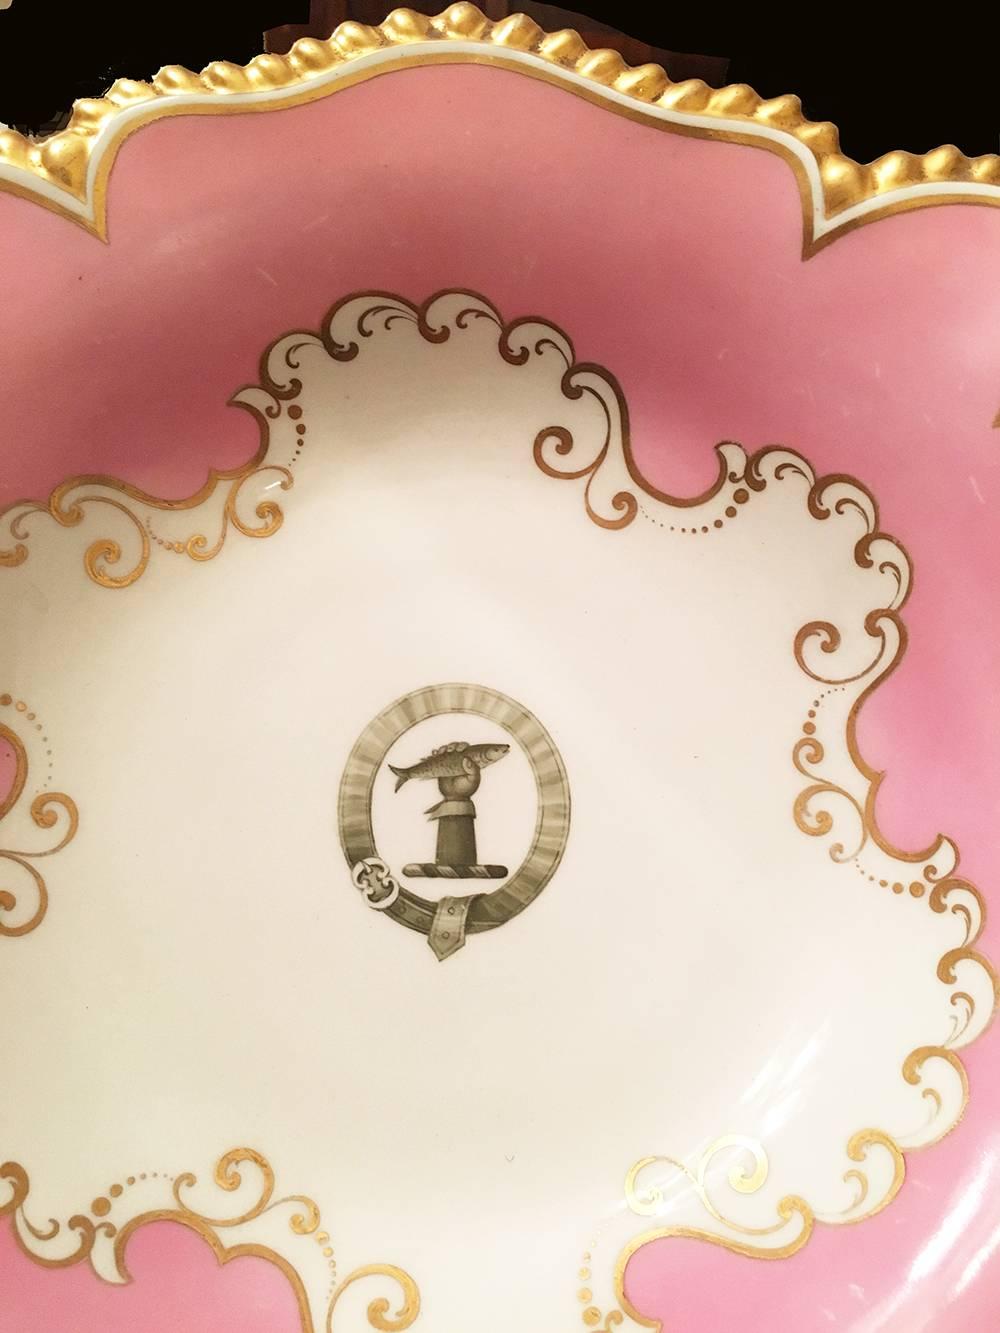 Enameled English Regency Period Flight Barr Barr Worcester Porcelain Comport with Crest For Sale